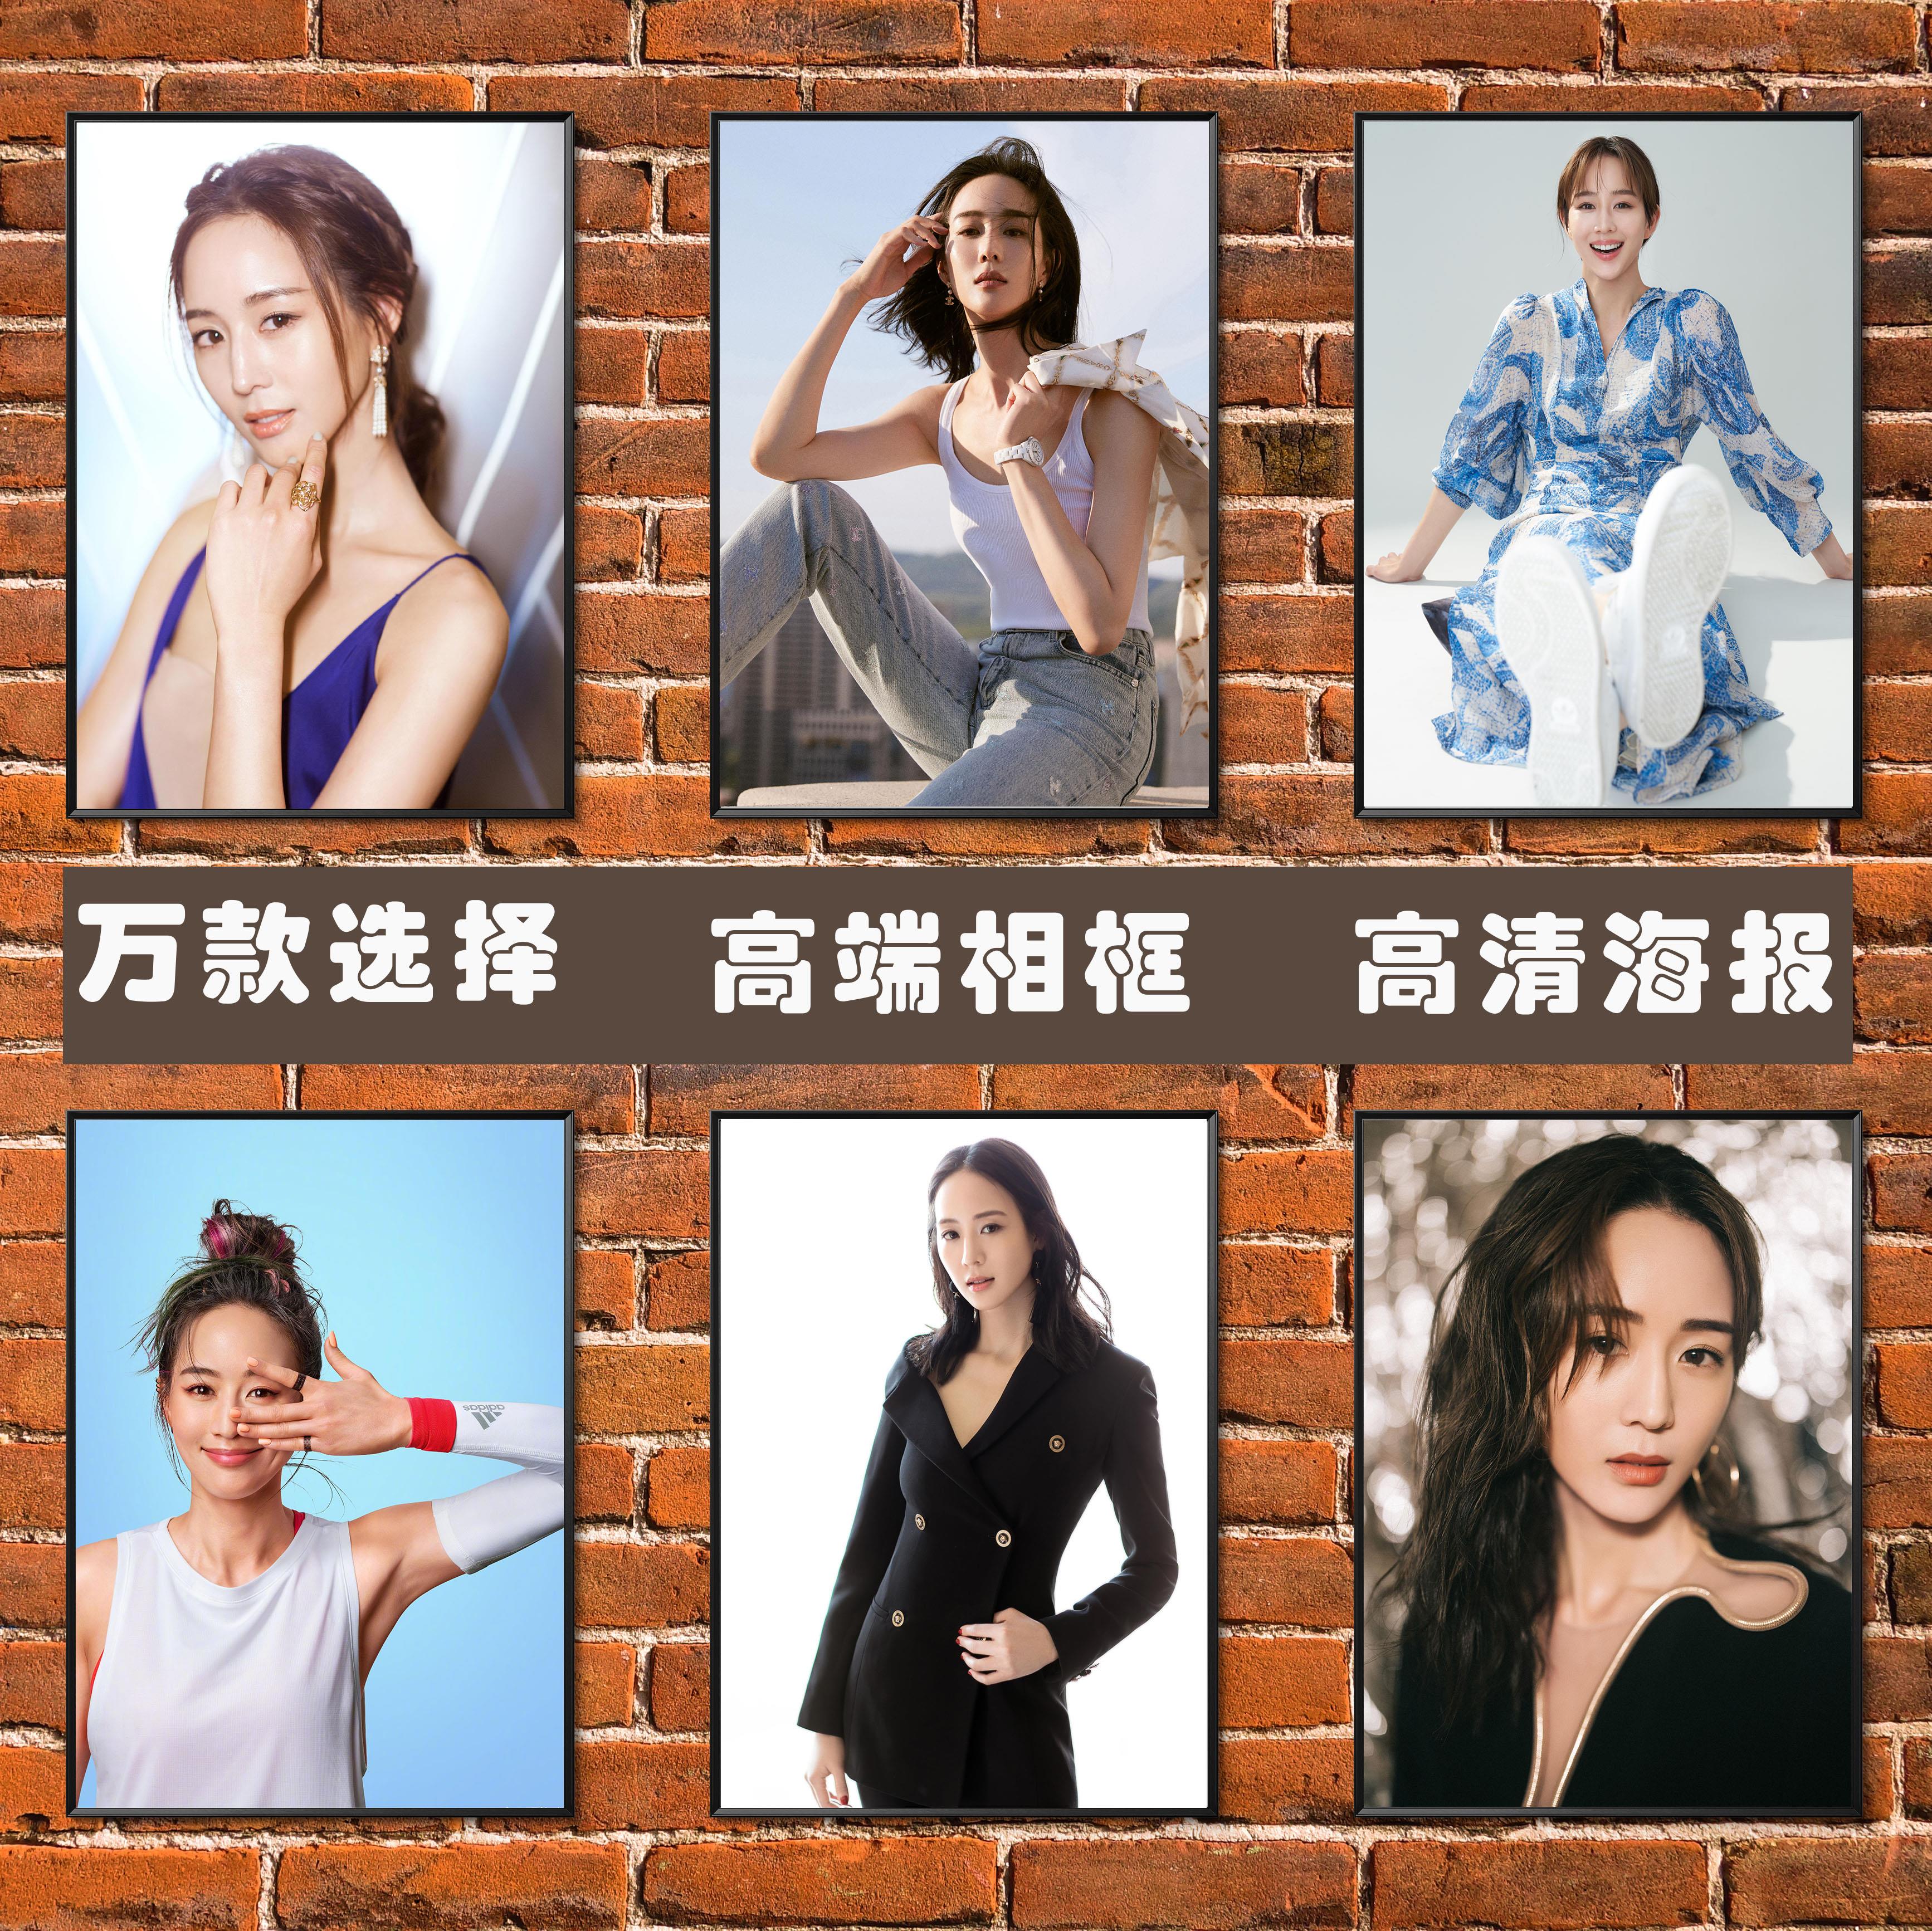 张钧宁海报演员明星性感美女写真照片壁纸简约高端相框装饰挂贴画